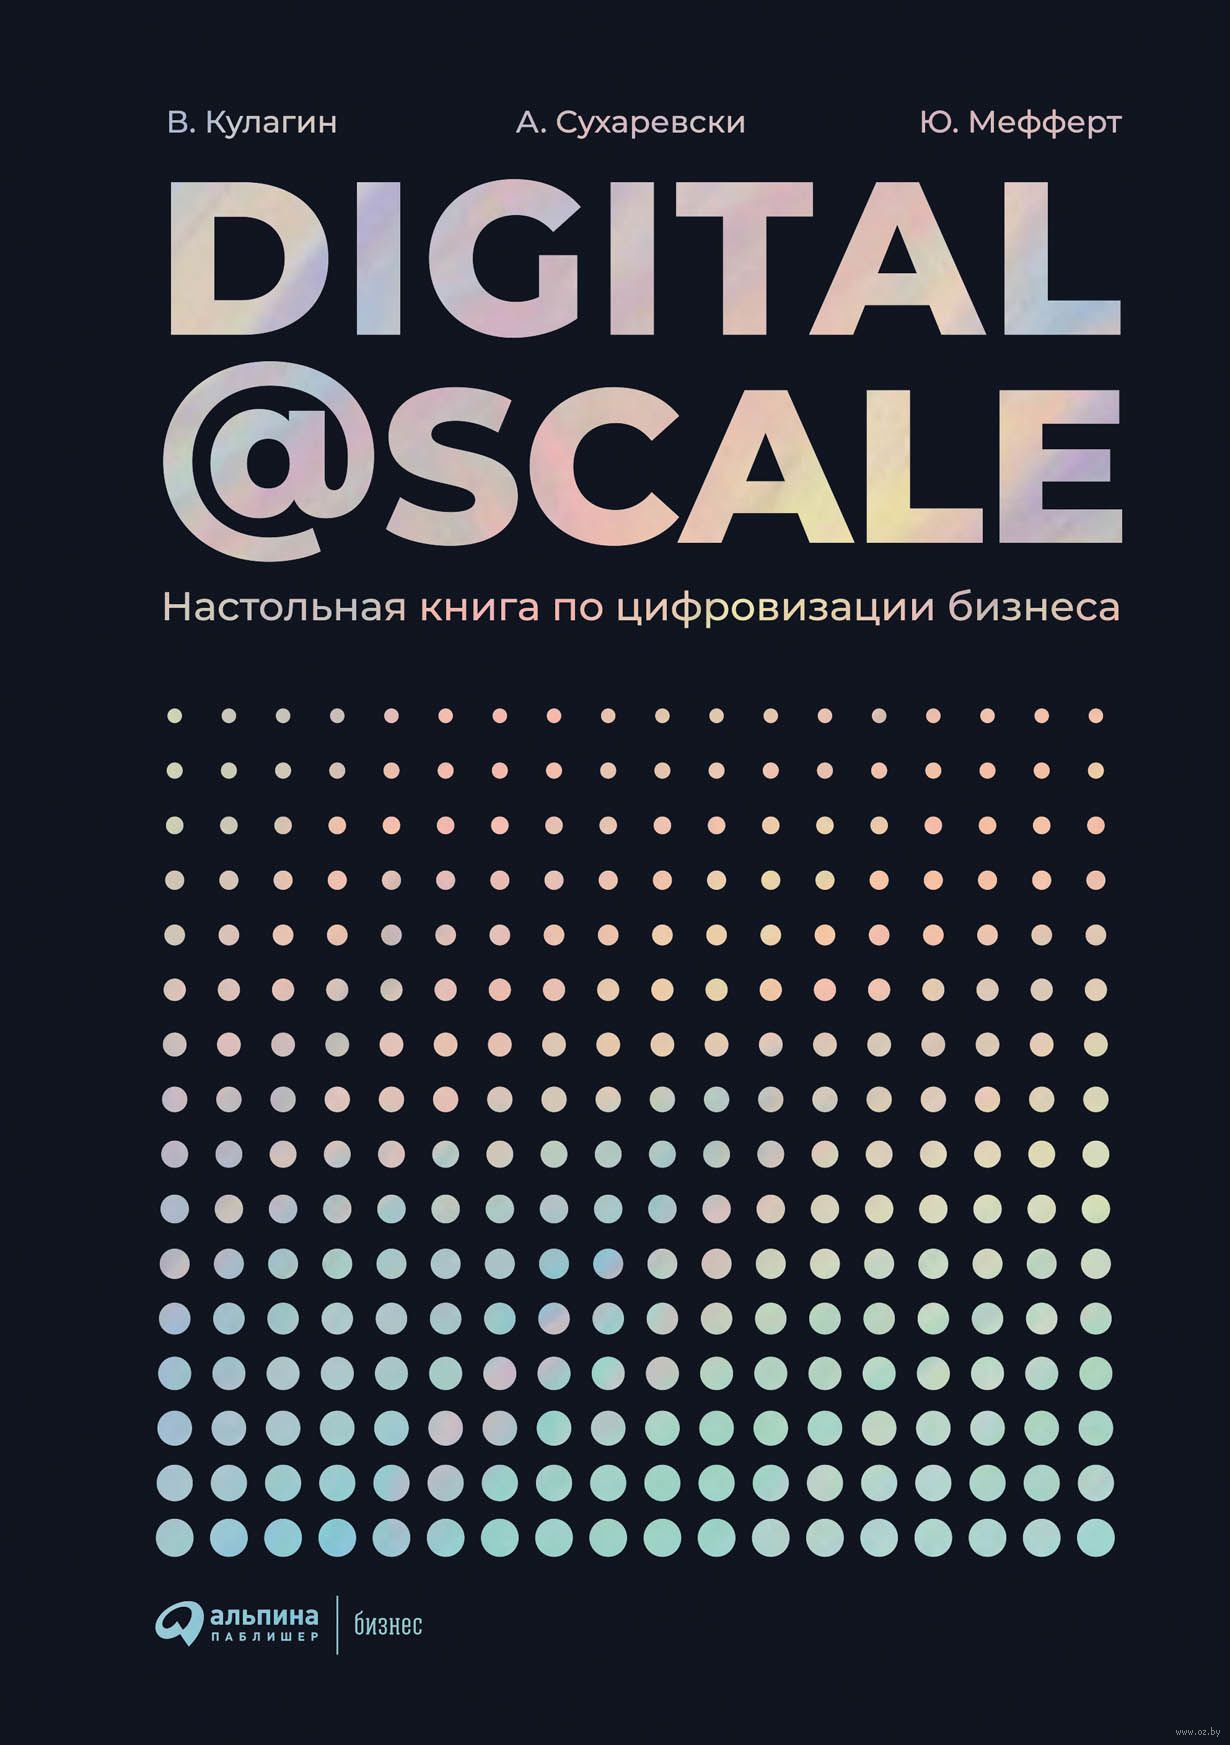 Бизнес настольных книг. Digital@Scale книга. Цифровая книга. Книга по цифровизация.